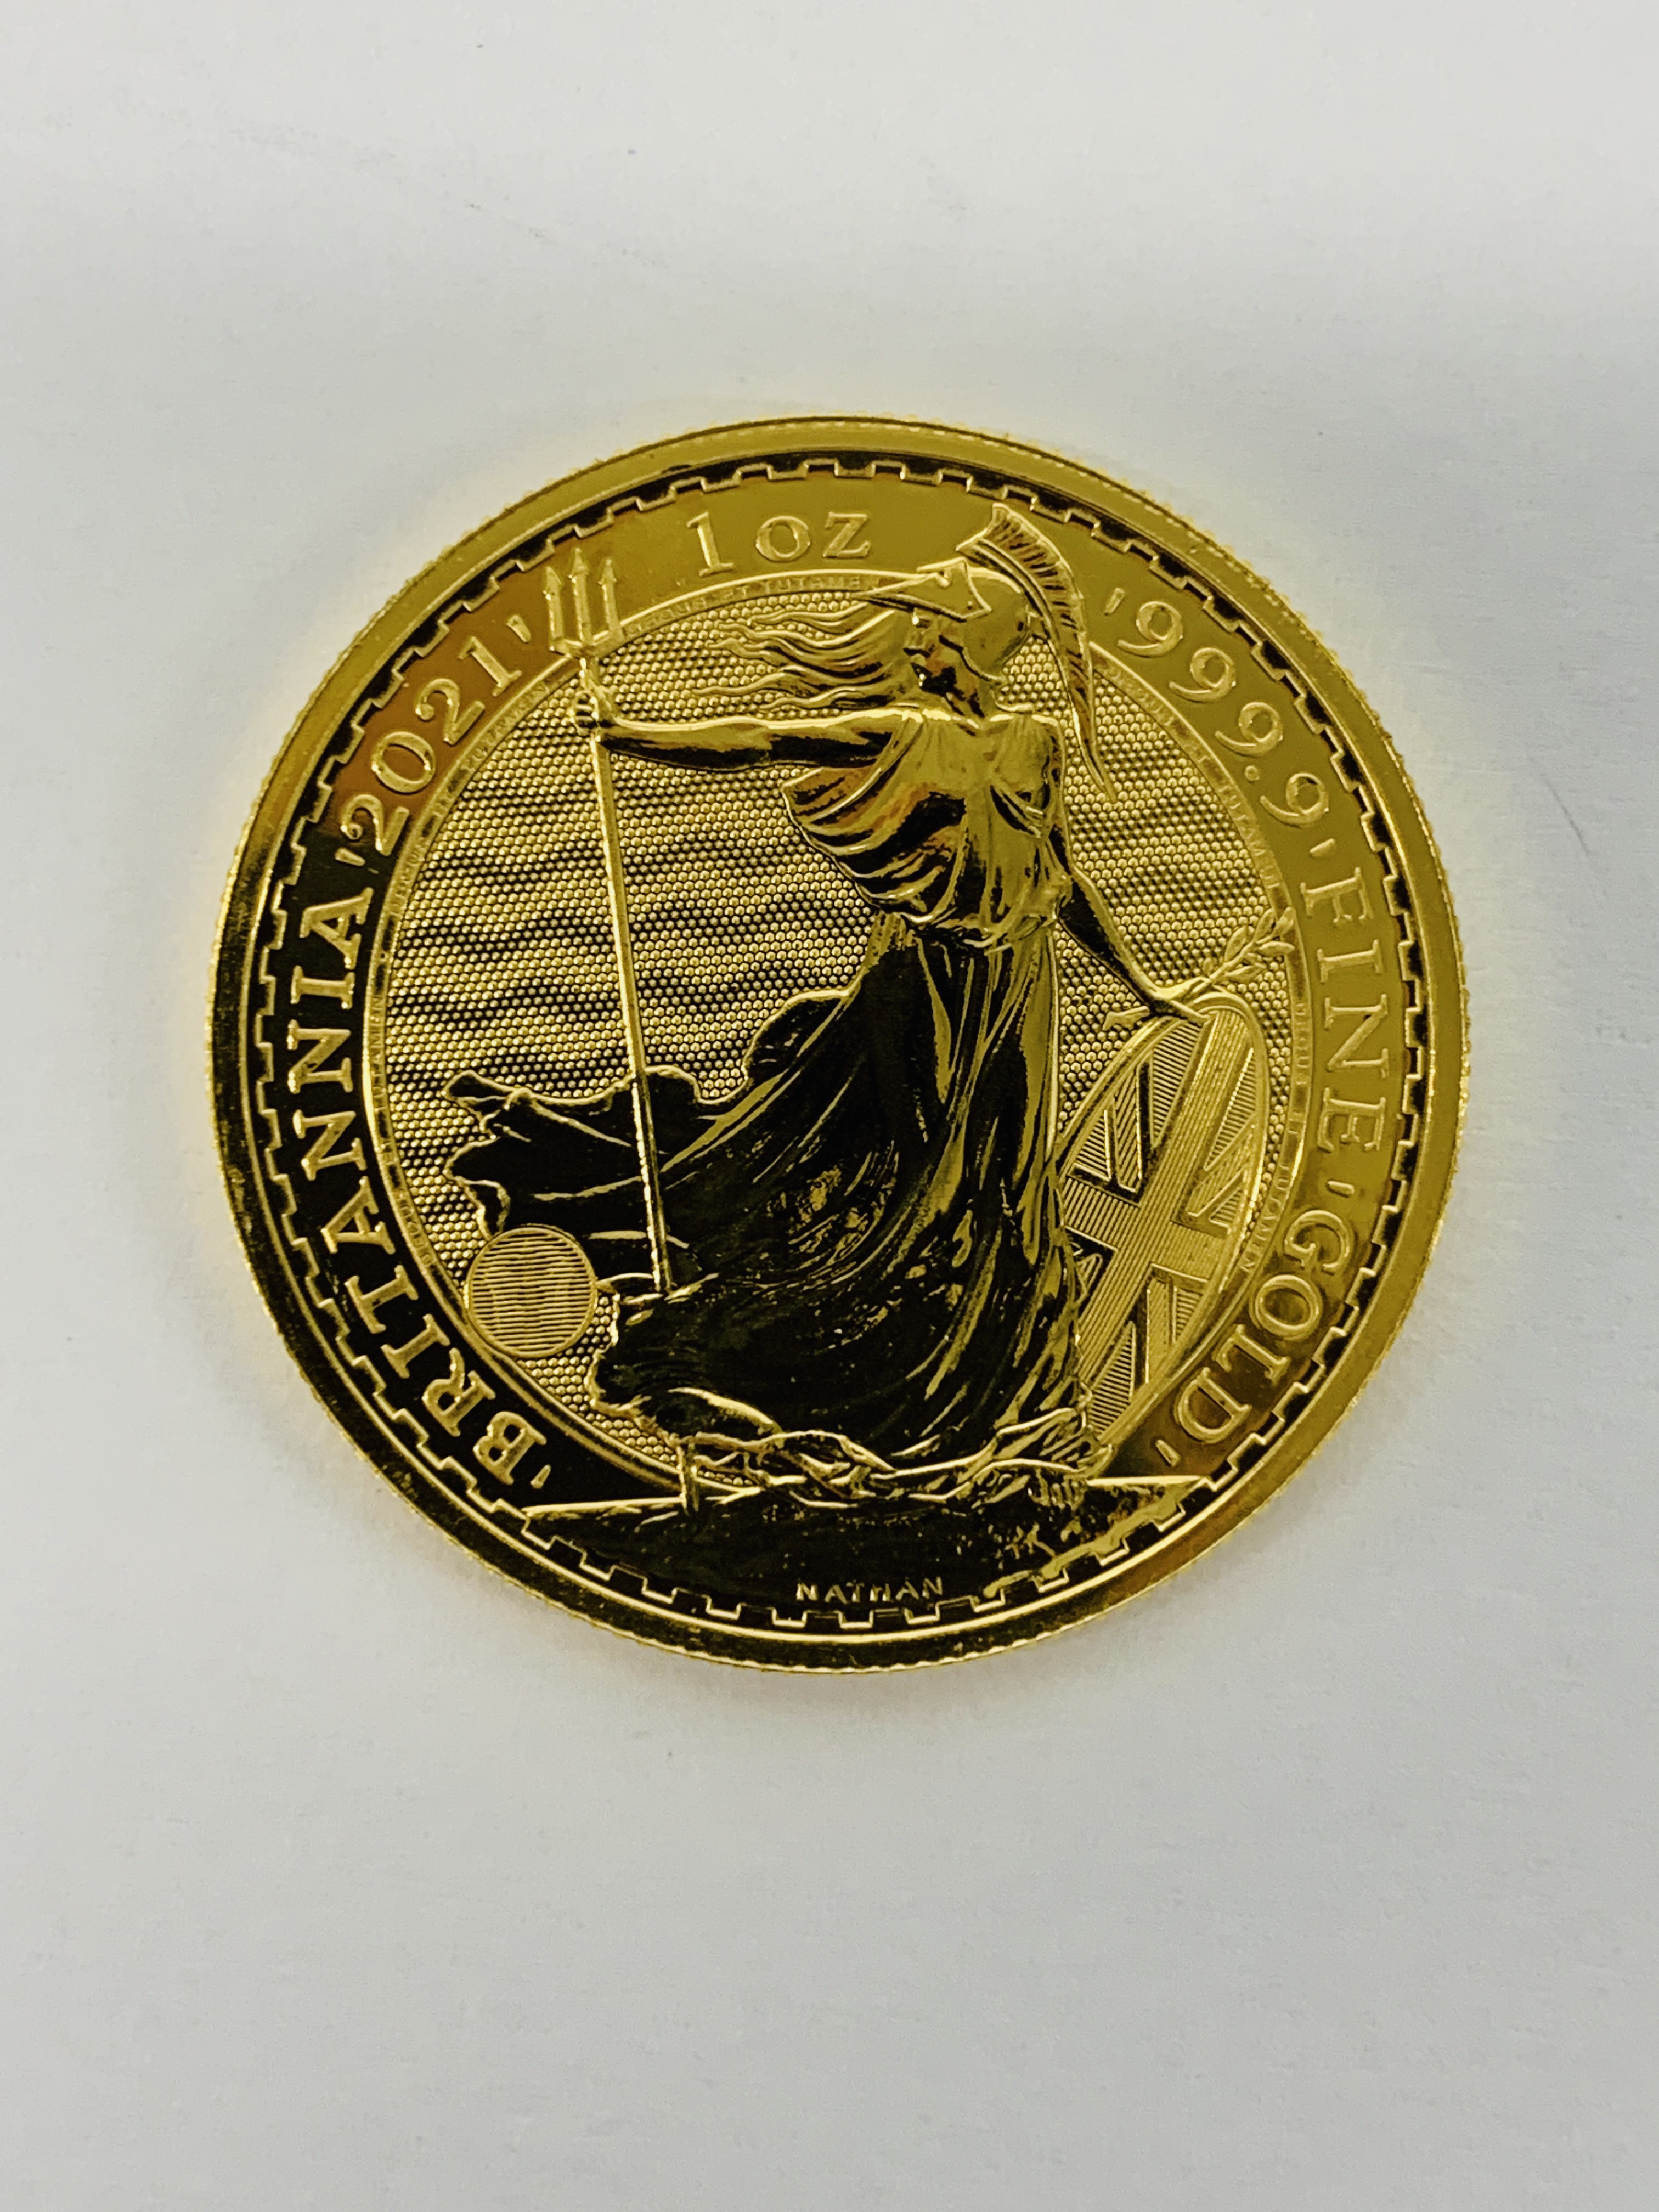 3 X 2021 BRITANNIA ONE OUNCE GOLD BULLION COINS. - Image 2 of 2